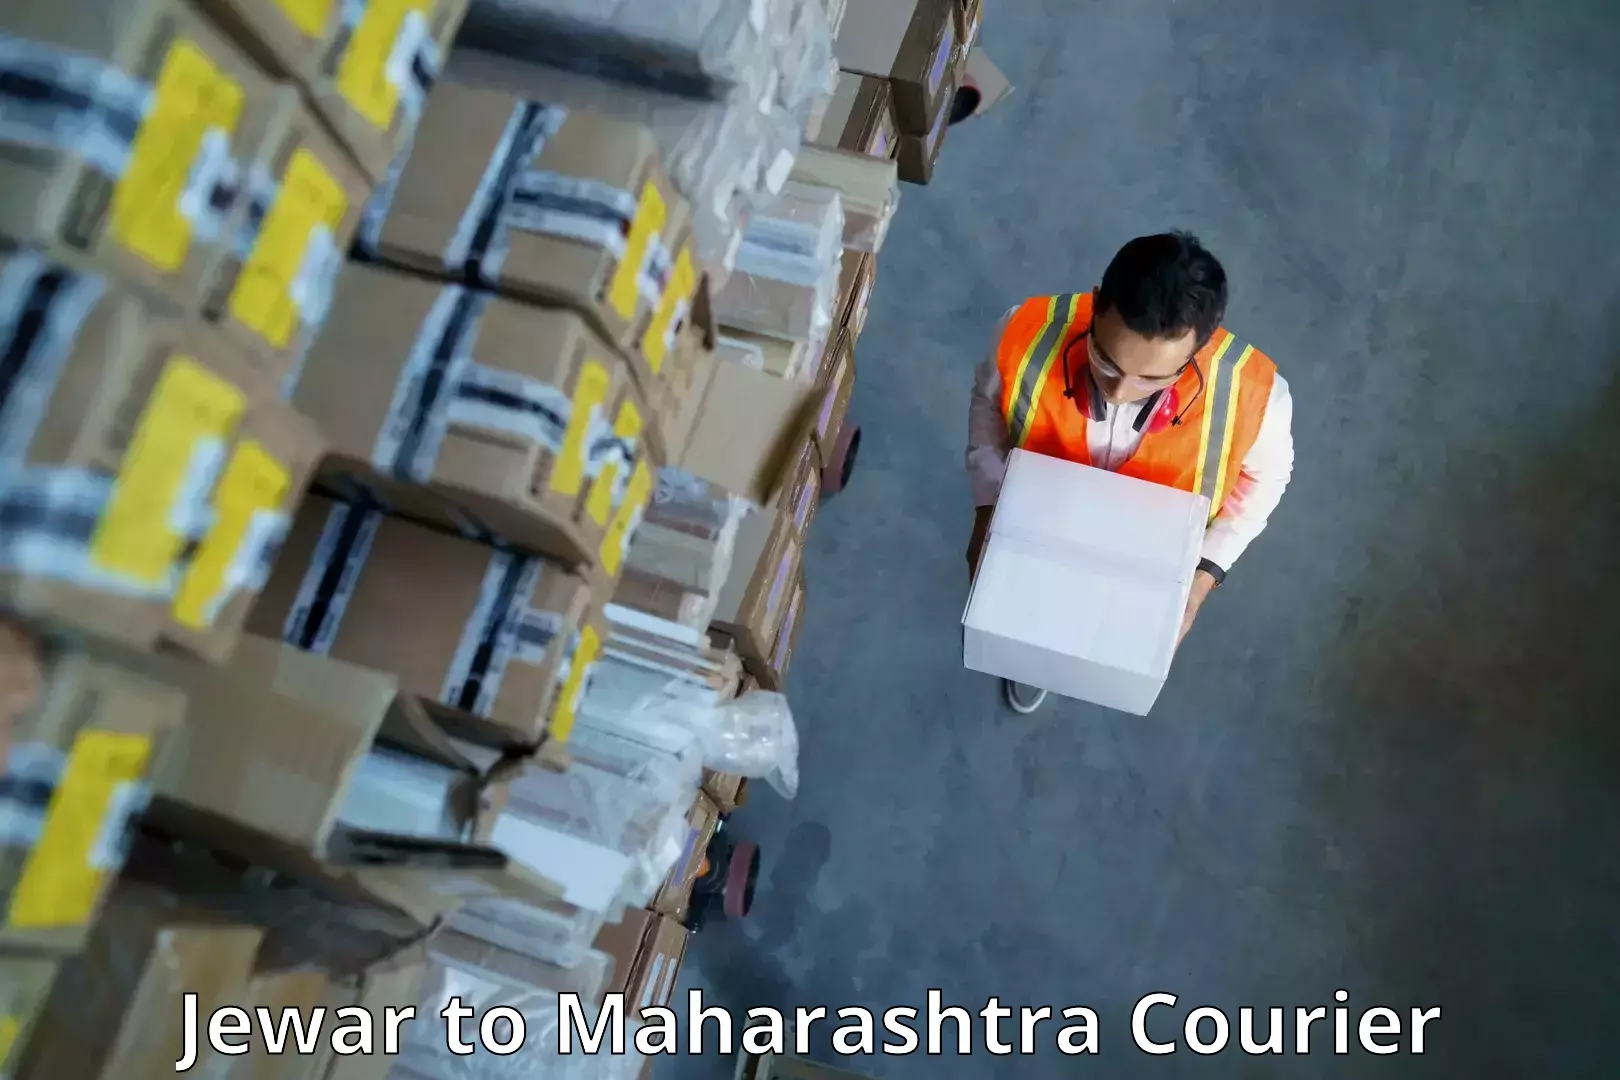 Business shipping needs Jewar to Maharashtra